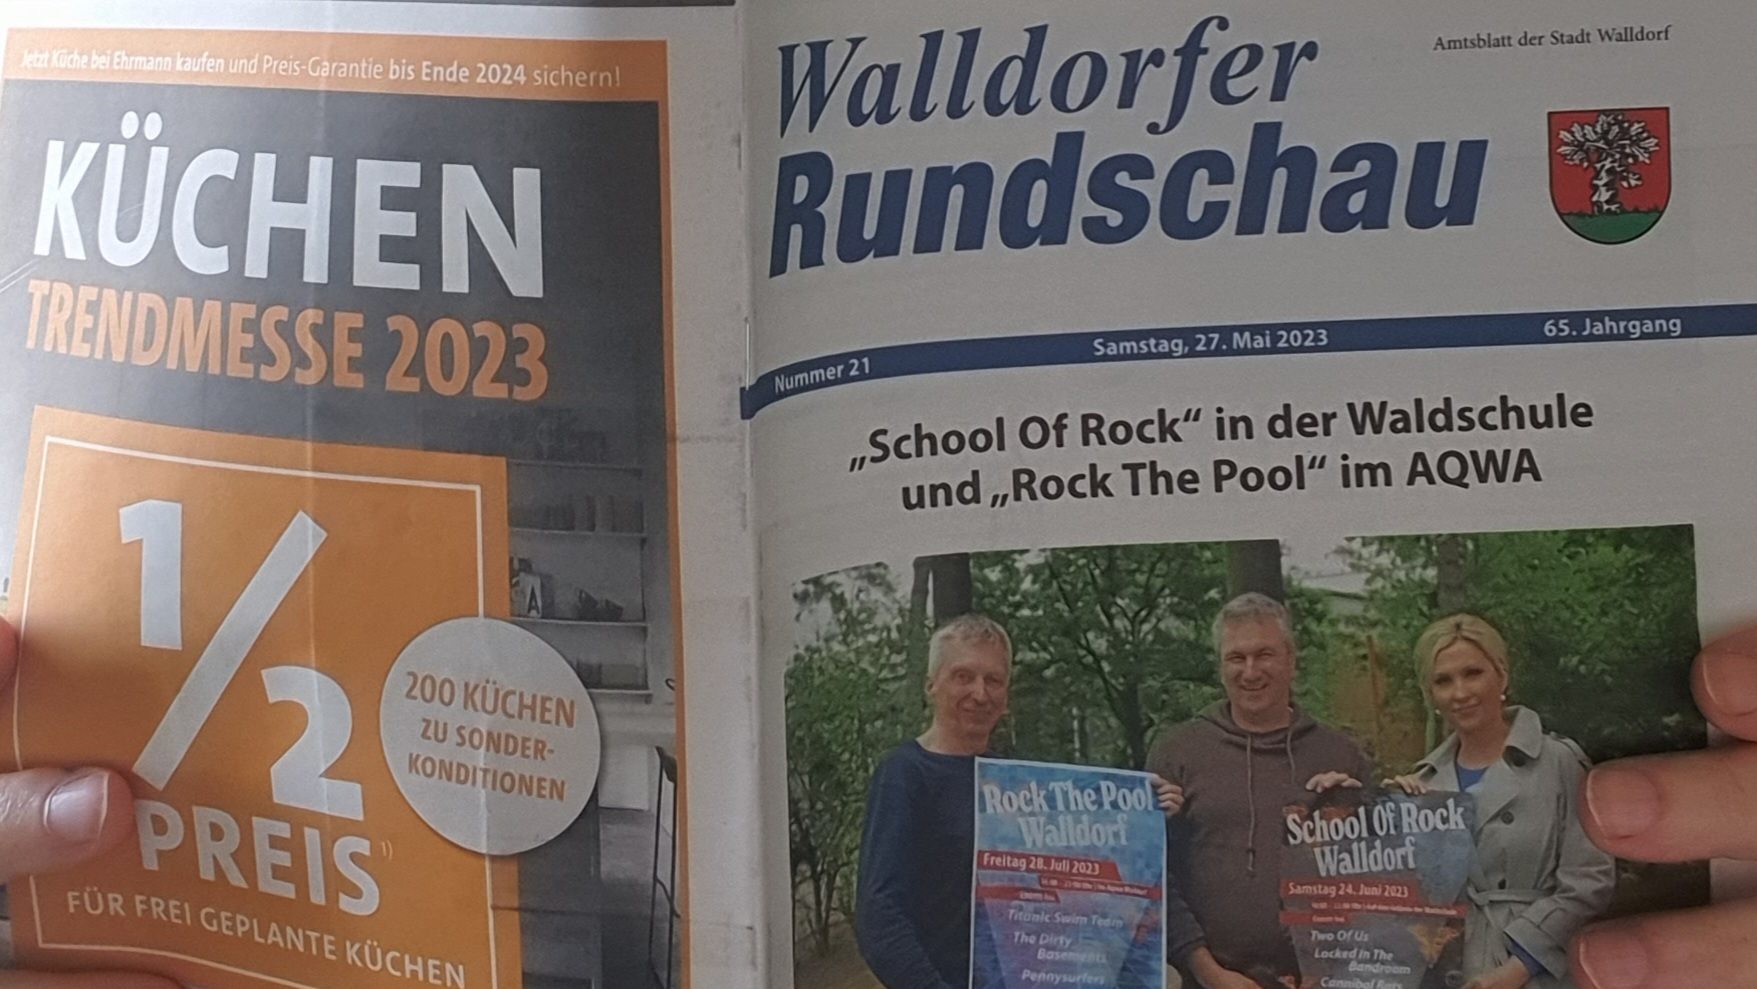 Die Walldorfer Rundschau 2023 Nr. 21 | Foto: Dr. Clemens Kriesel